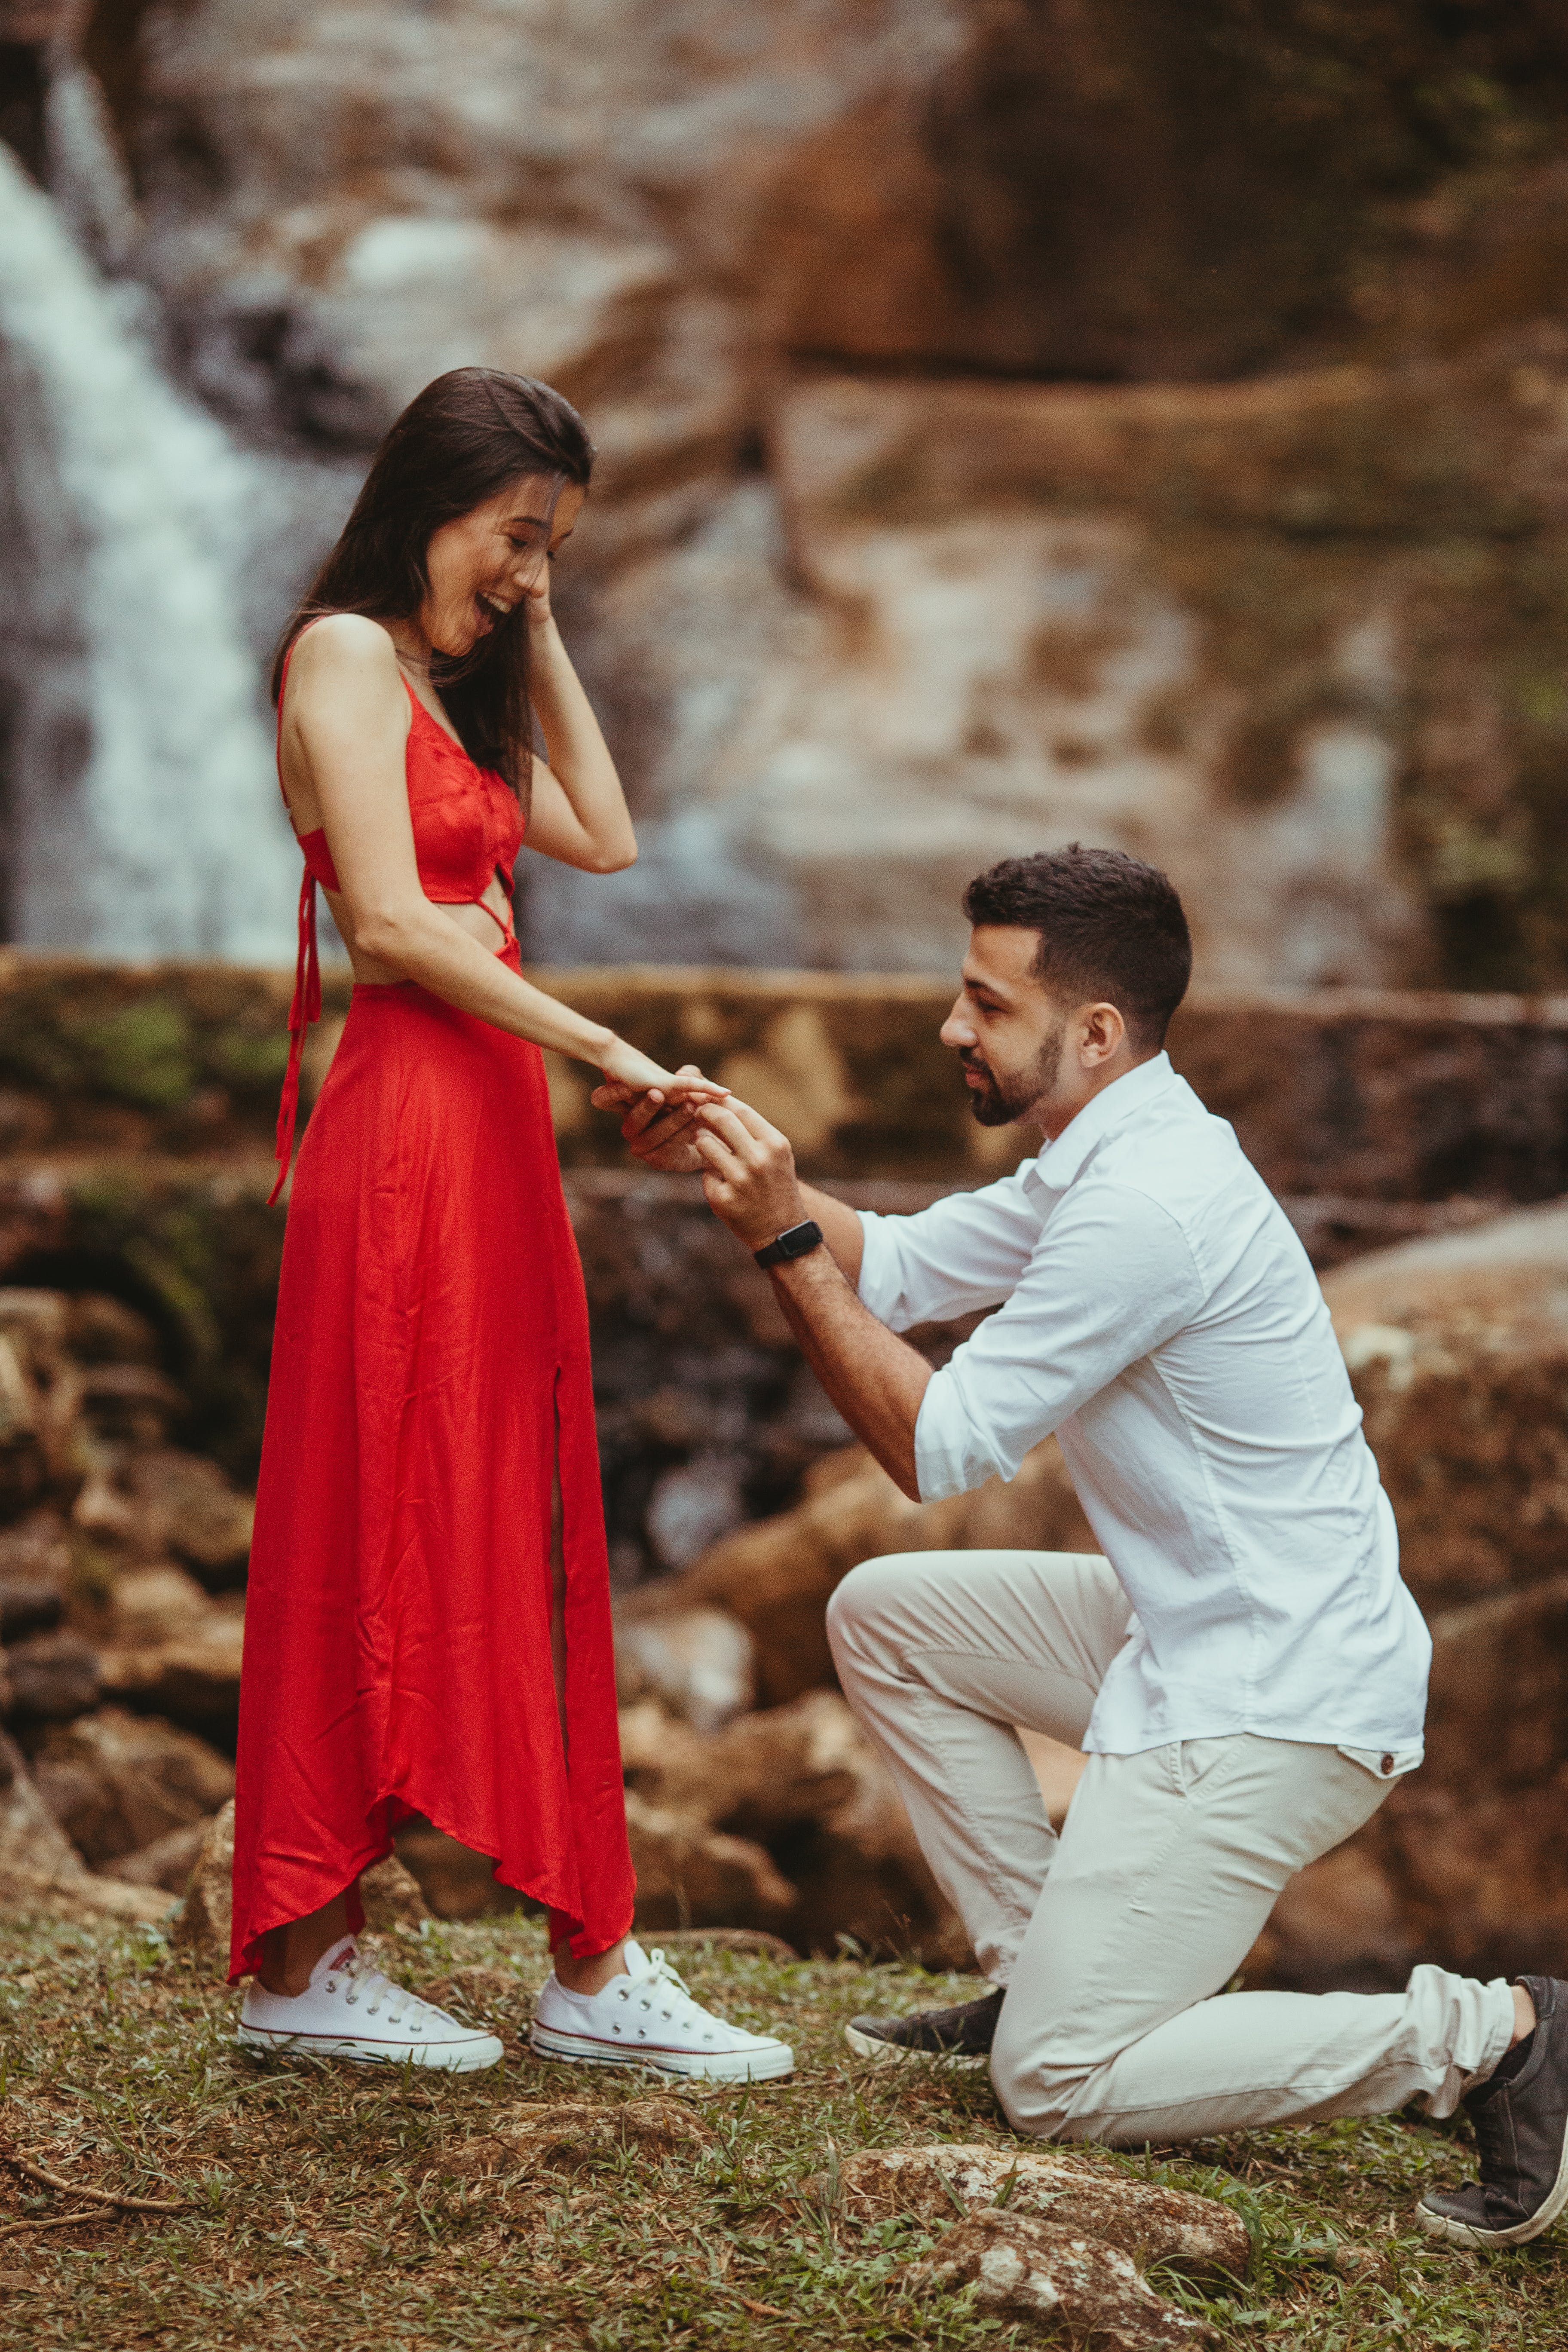 Ein Mann macht einer Frau einen Heiratsantrag | Quelle: Pexels